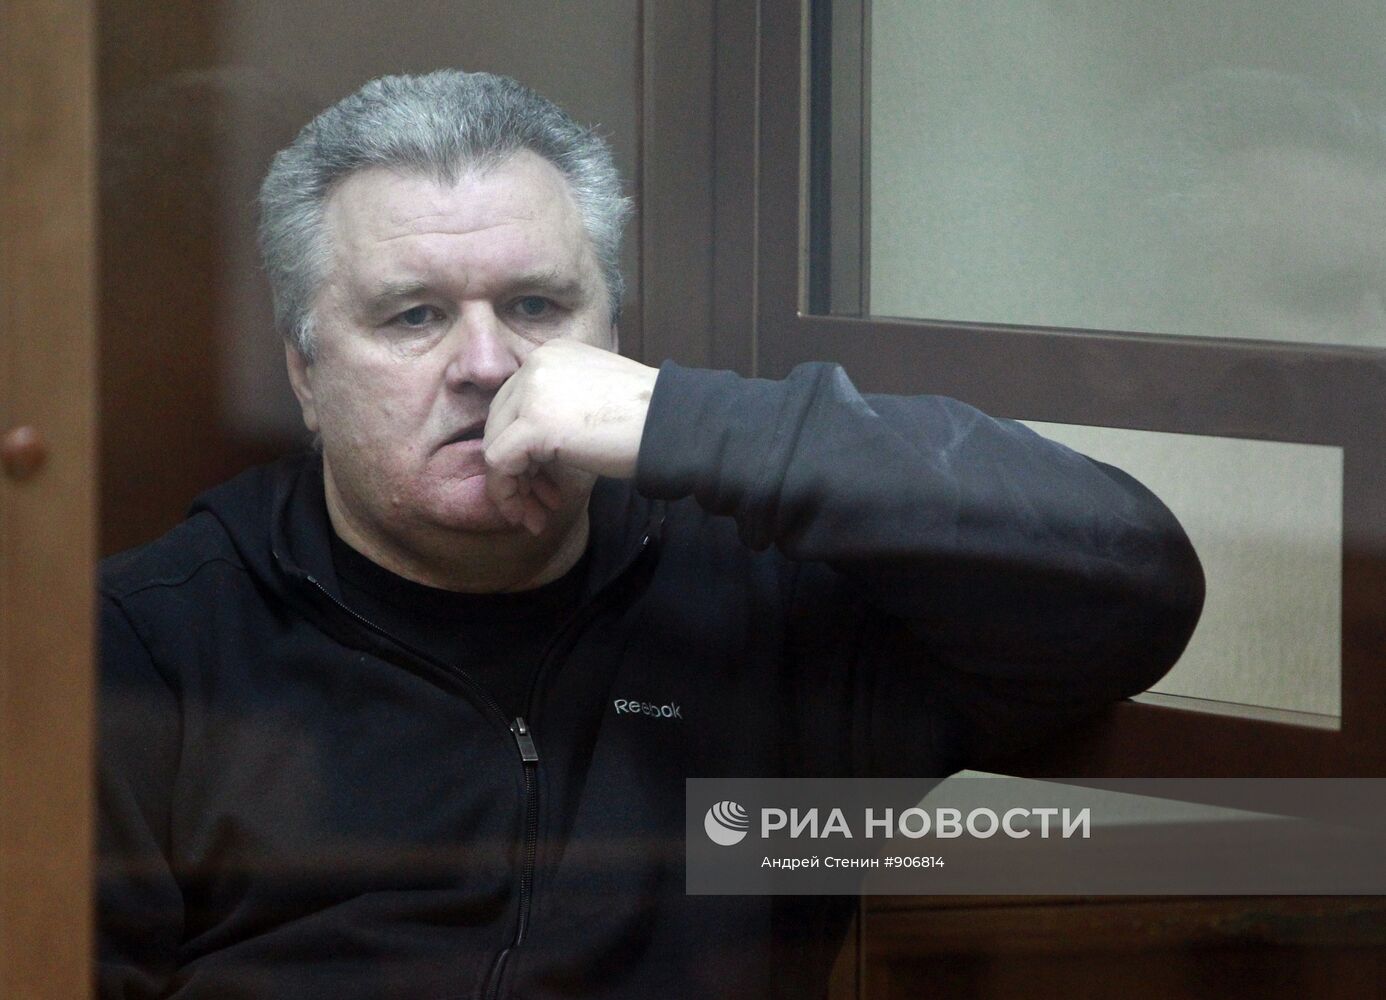 Мосгорсуд огласил приговор по уголовному делу о мошенничестве